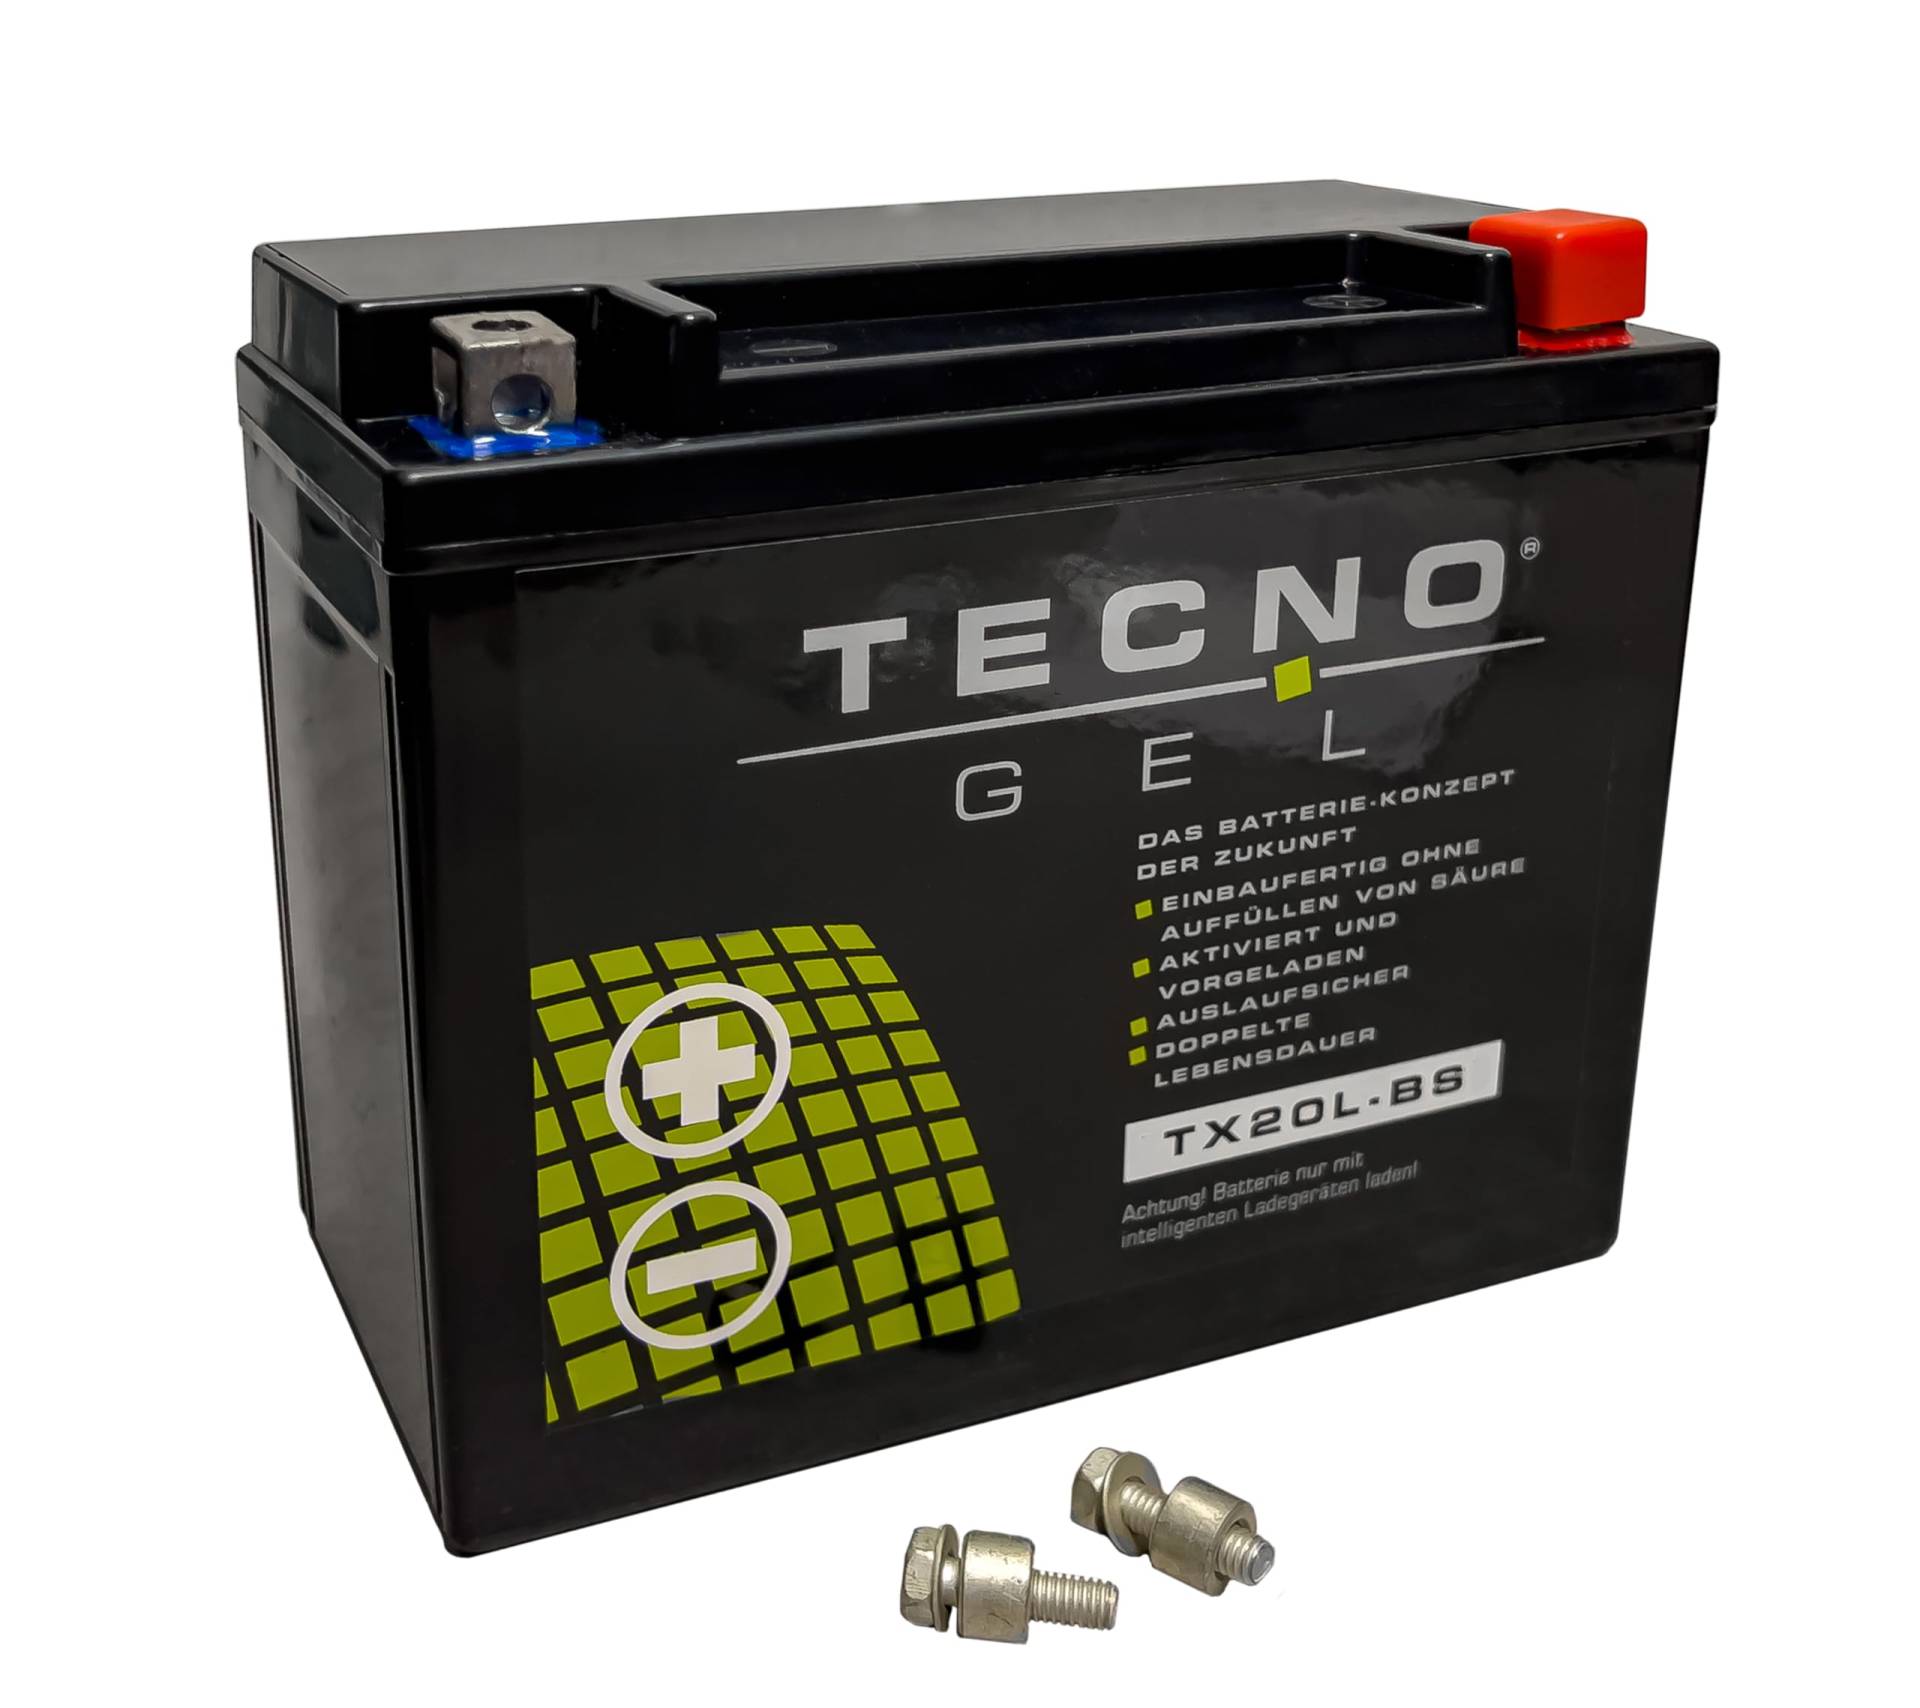 TECNO-GEL Motorrad-Batterie für YTX20L-BS für CAN-AM Outlander 400/450/500/570/650/800/1000 2010-2018, 12V Gel-Batterie 20Ah (DIN 82000), 175x87x155 mm von Wirth-Federn